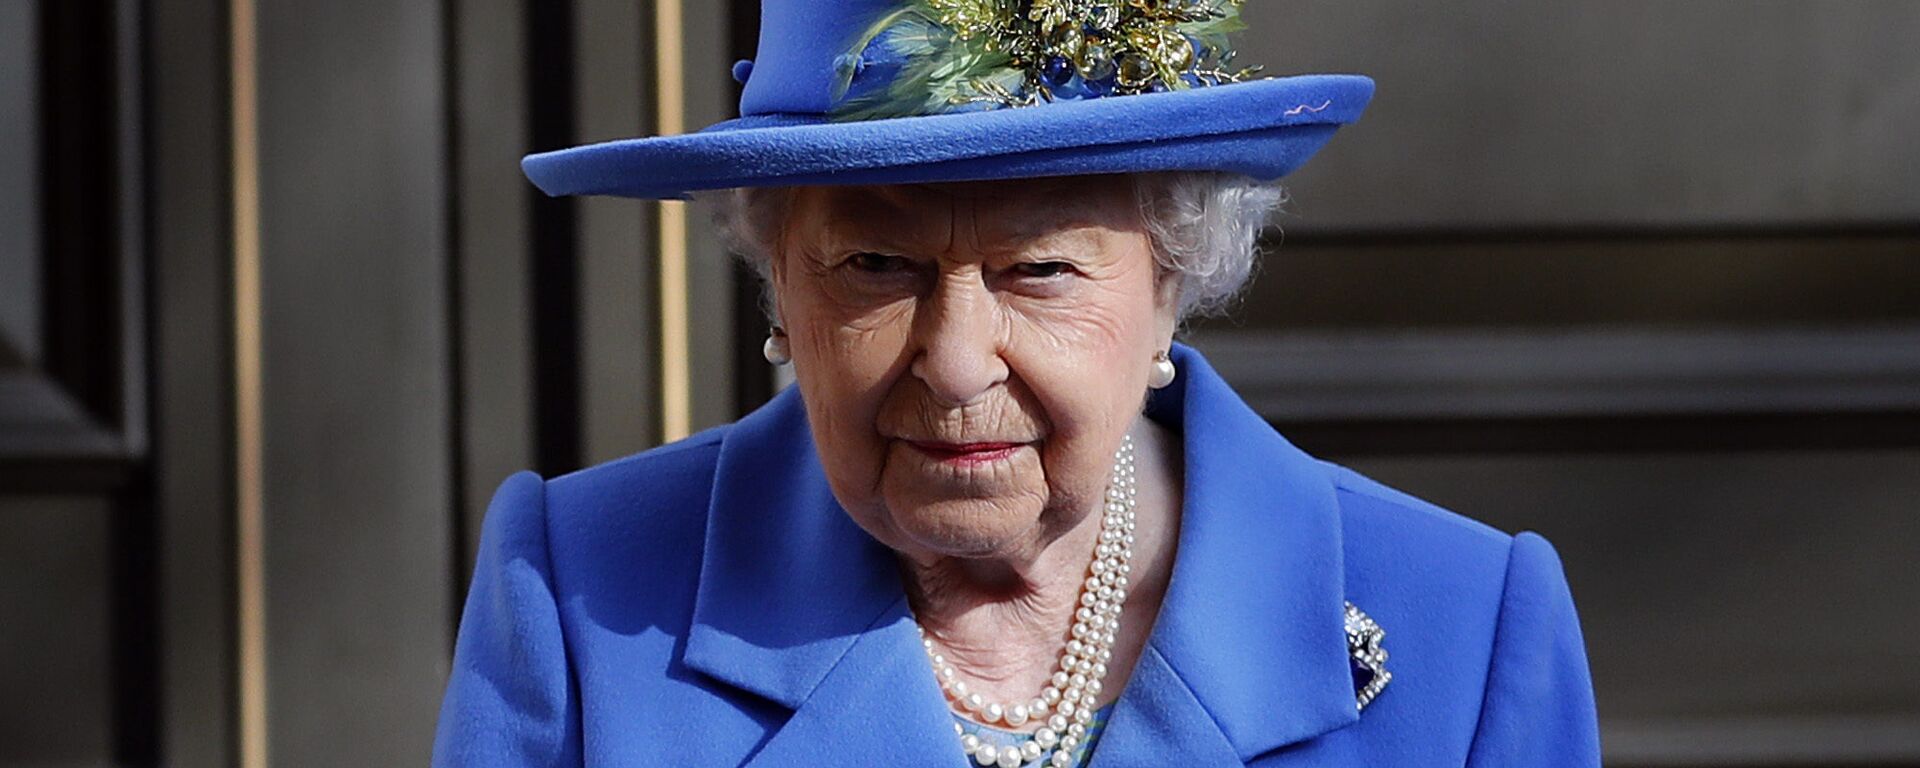 La reina británica, Isabel II - Sputnik Mundo, 1920, 27.08.2020